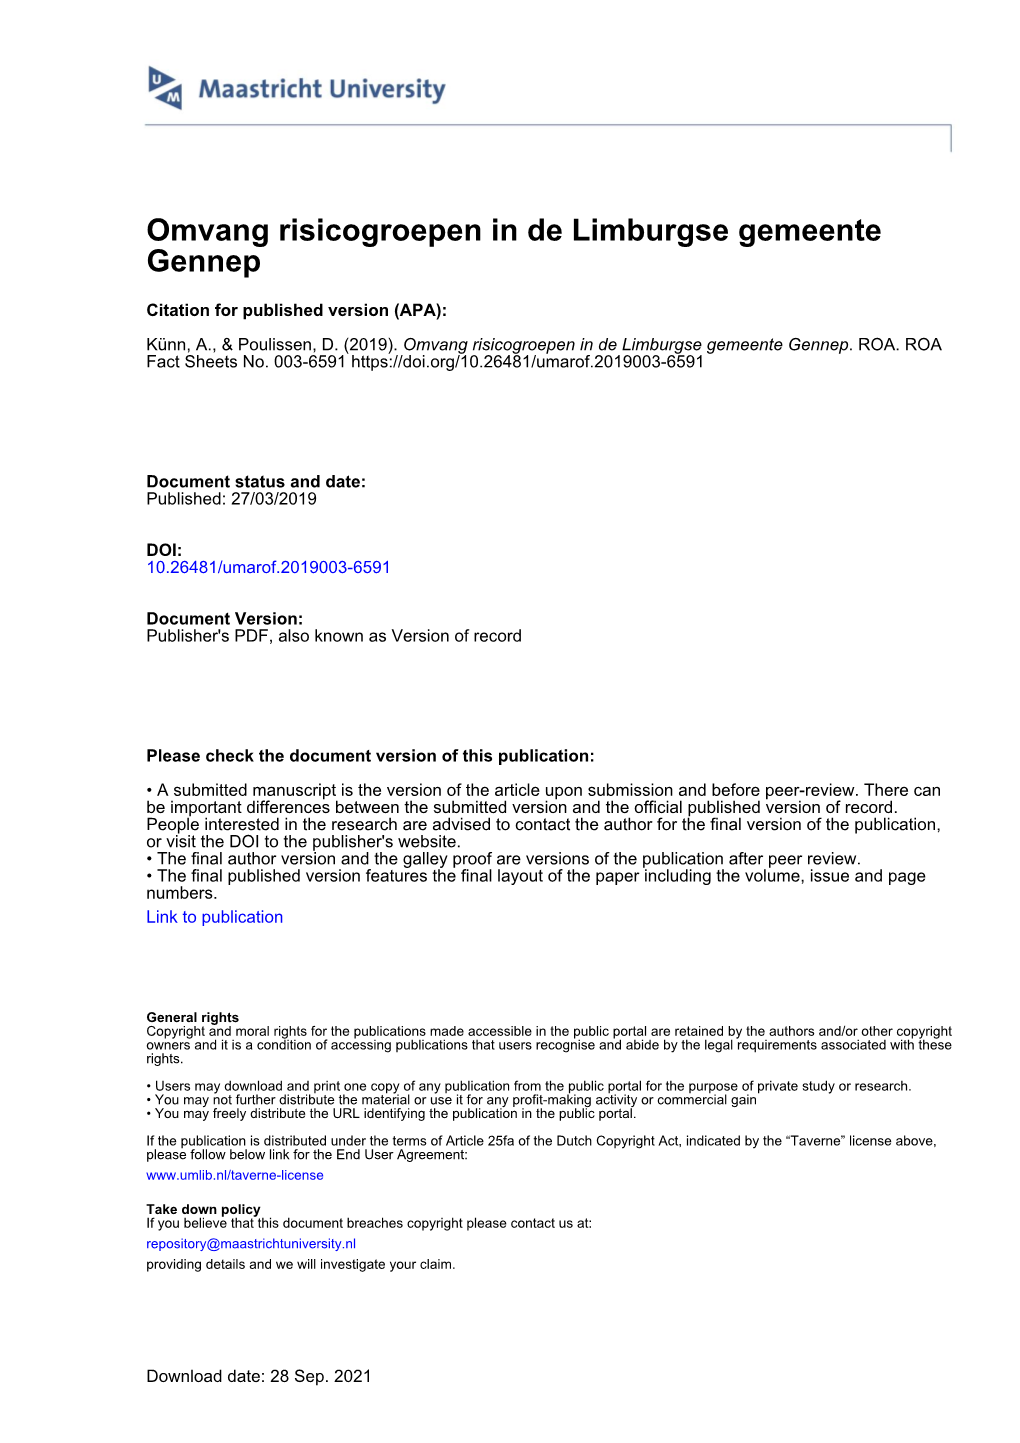 Omvang Risicogroepen in De Limburgse Gemeente Gennep